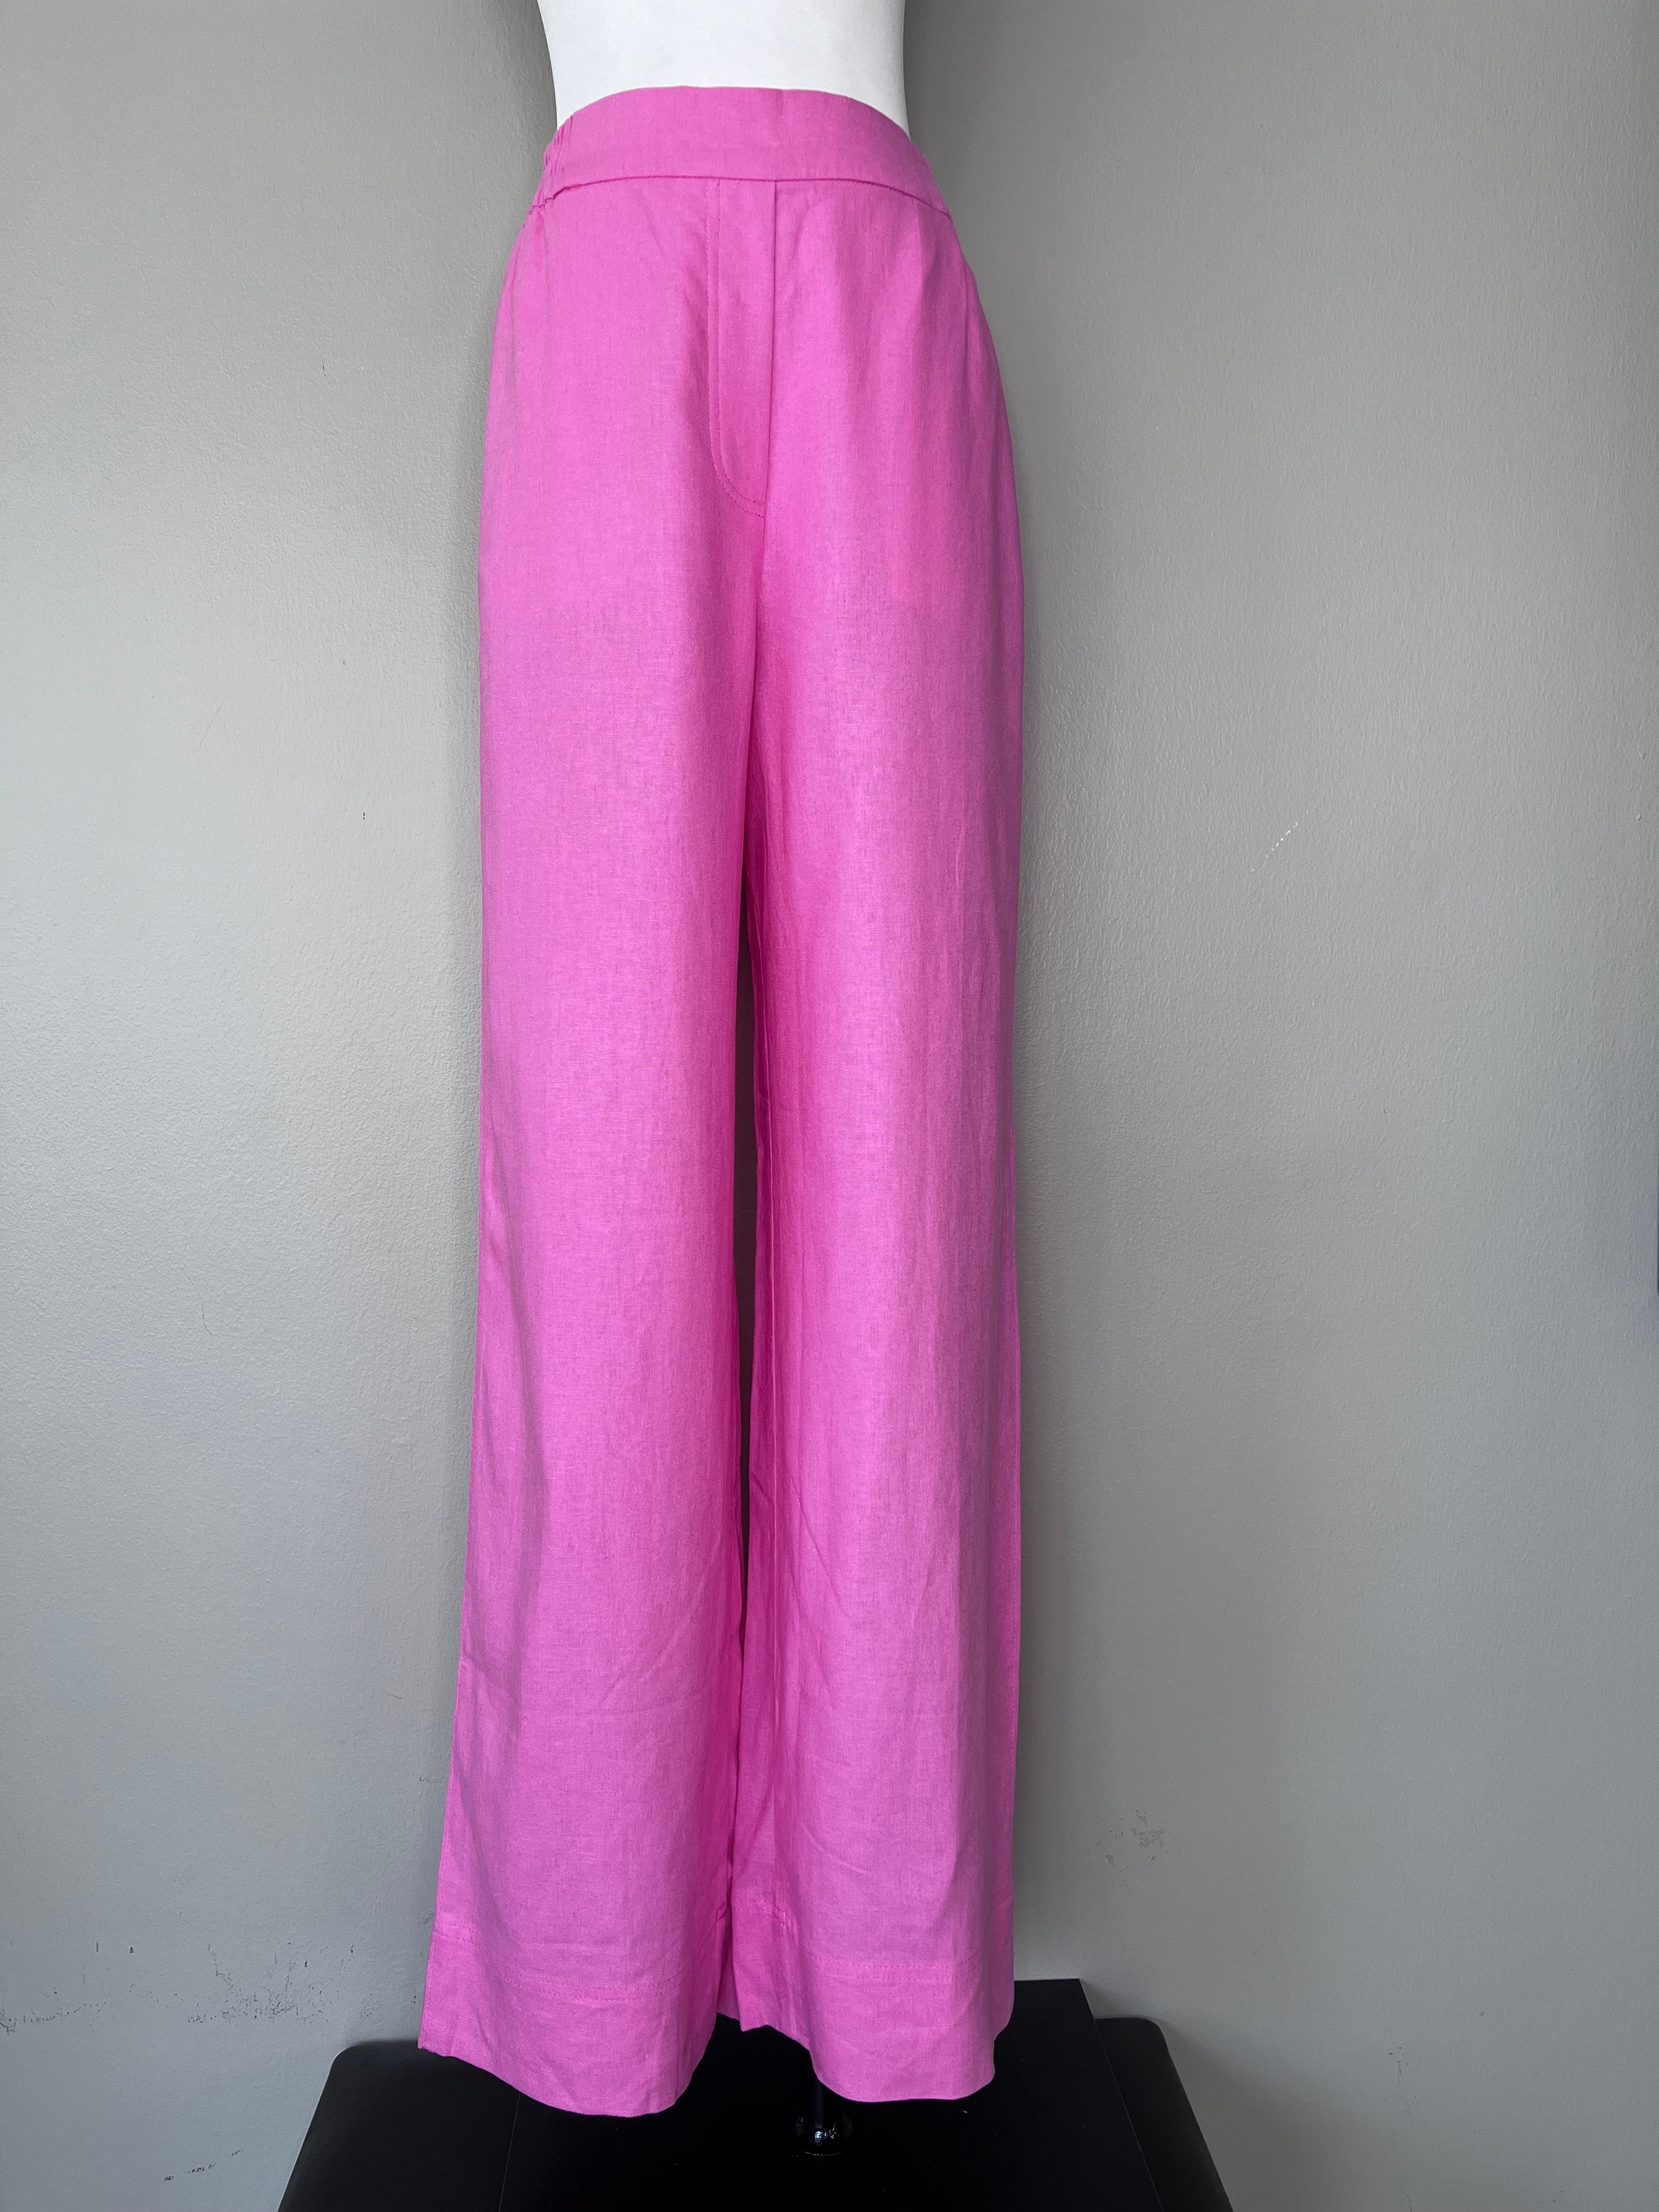 BRAND NEW! Pink flowy dress pants - ZARA